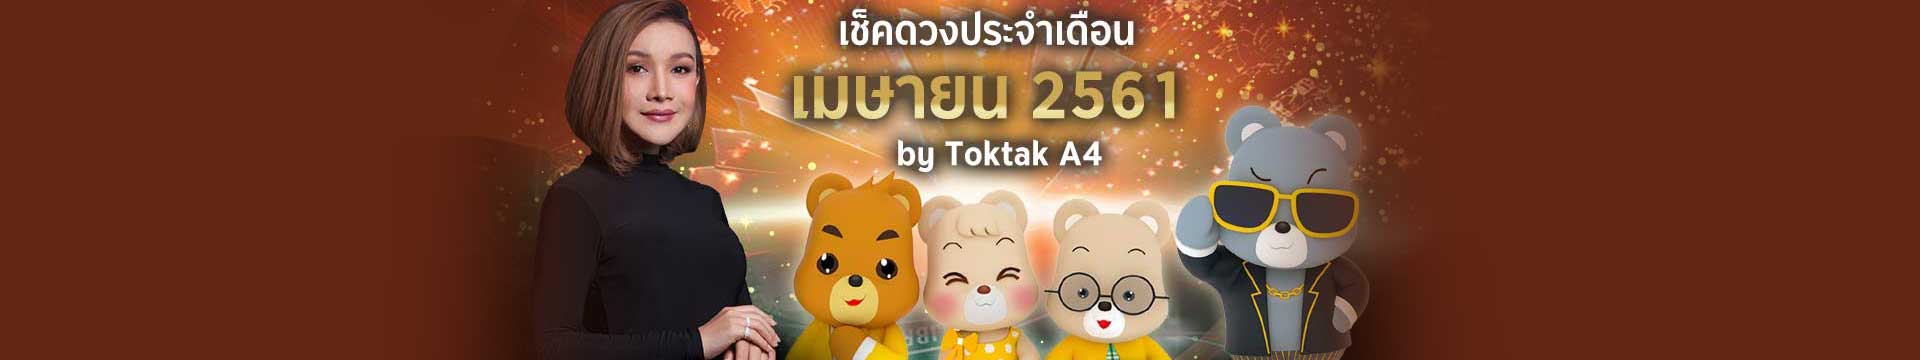 เช็คดวงเดือนเมษายน 2561 ตามวันเกิด โดย Toktak A4